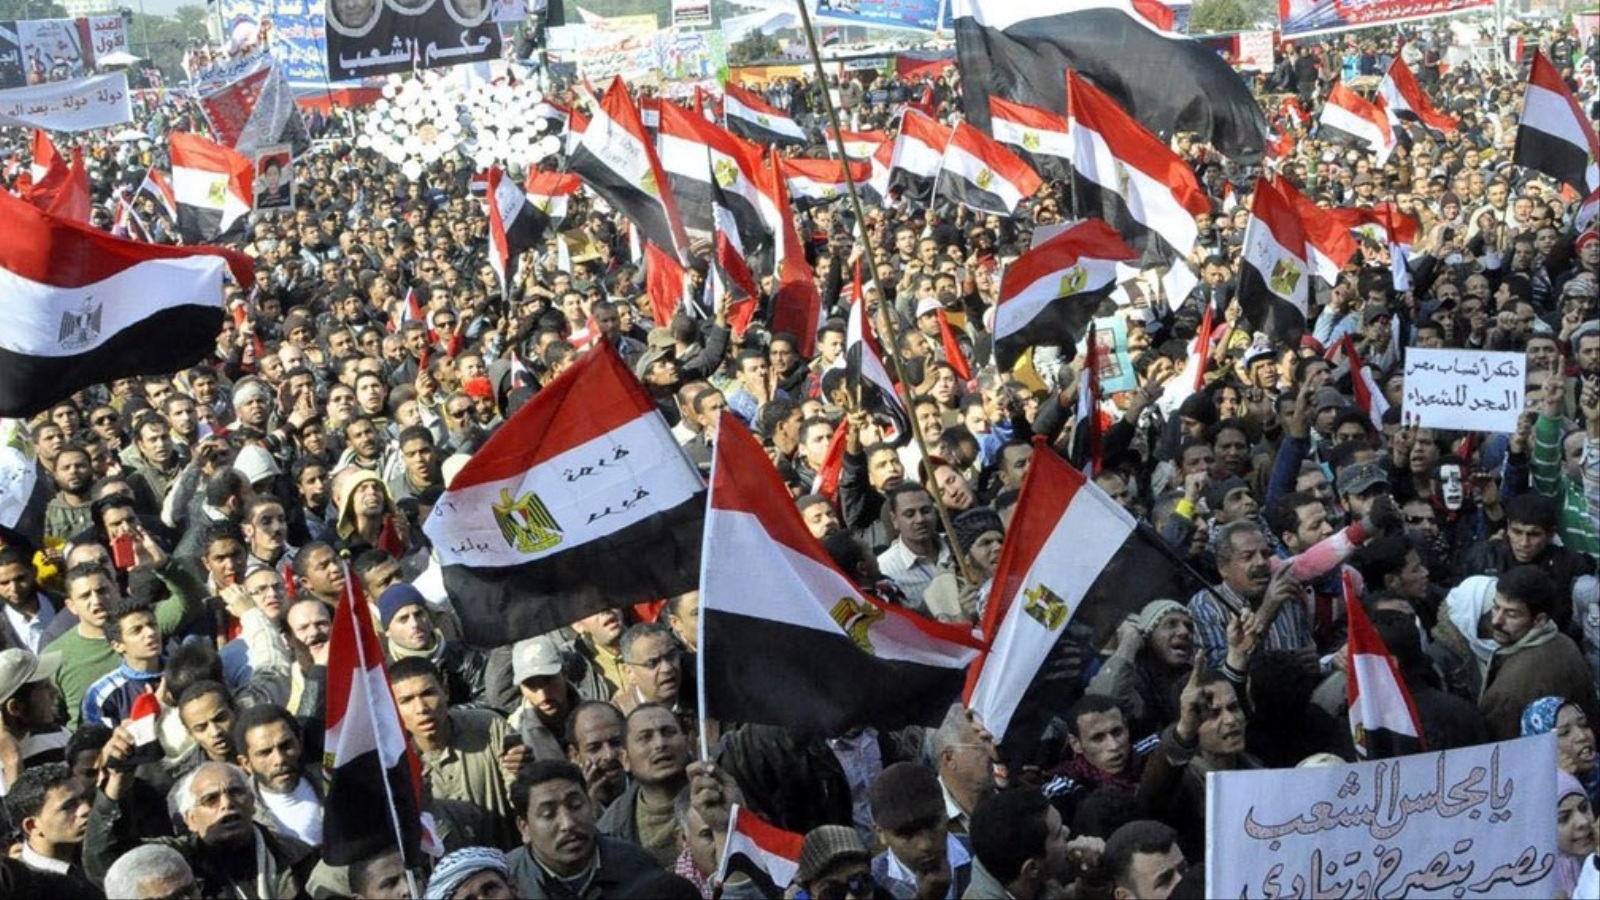 لا زلت أعتقد أن ثورة ٢٥ يناير هي  الشيء الوحيد الذي يمكن لنا نحن المصريون أن نفخر به بحق، ولكننا أضعنا هذا الفخر بأنفسنا وأسميناها مؤامرة